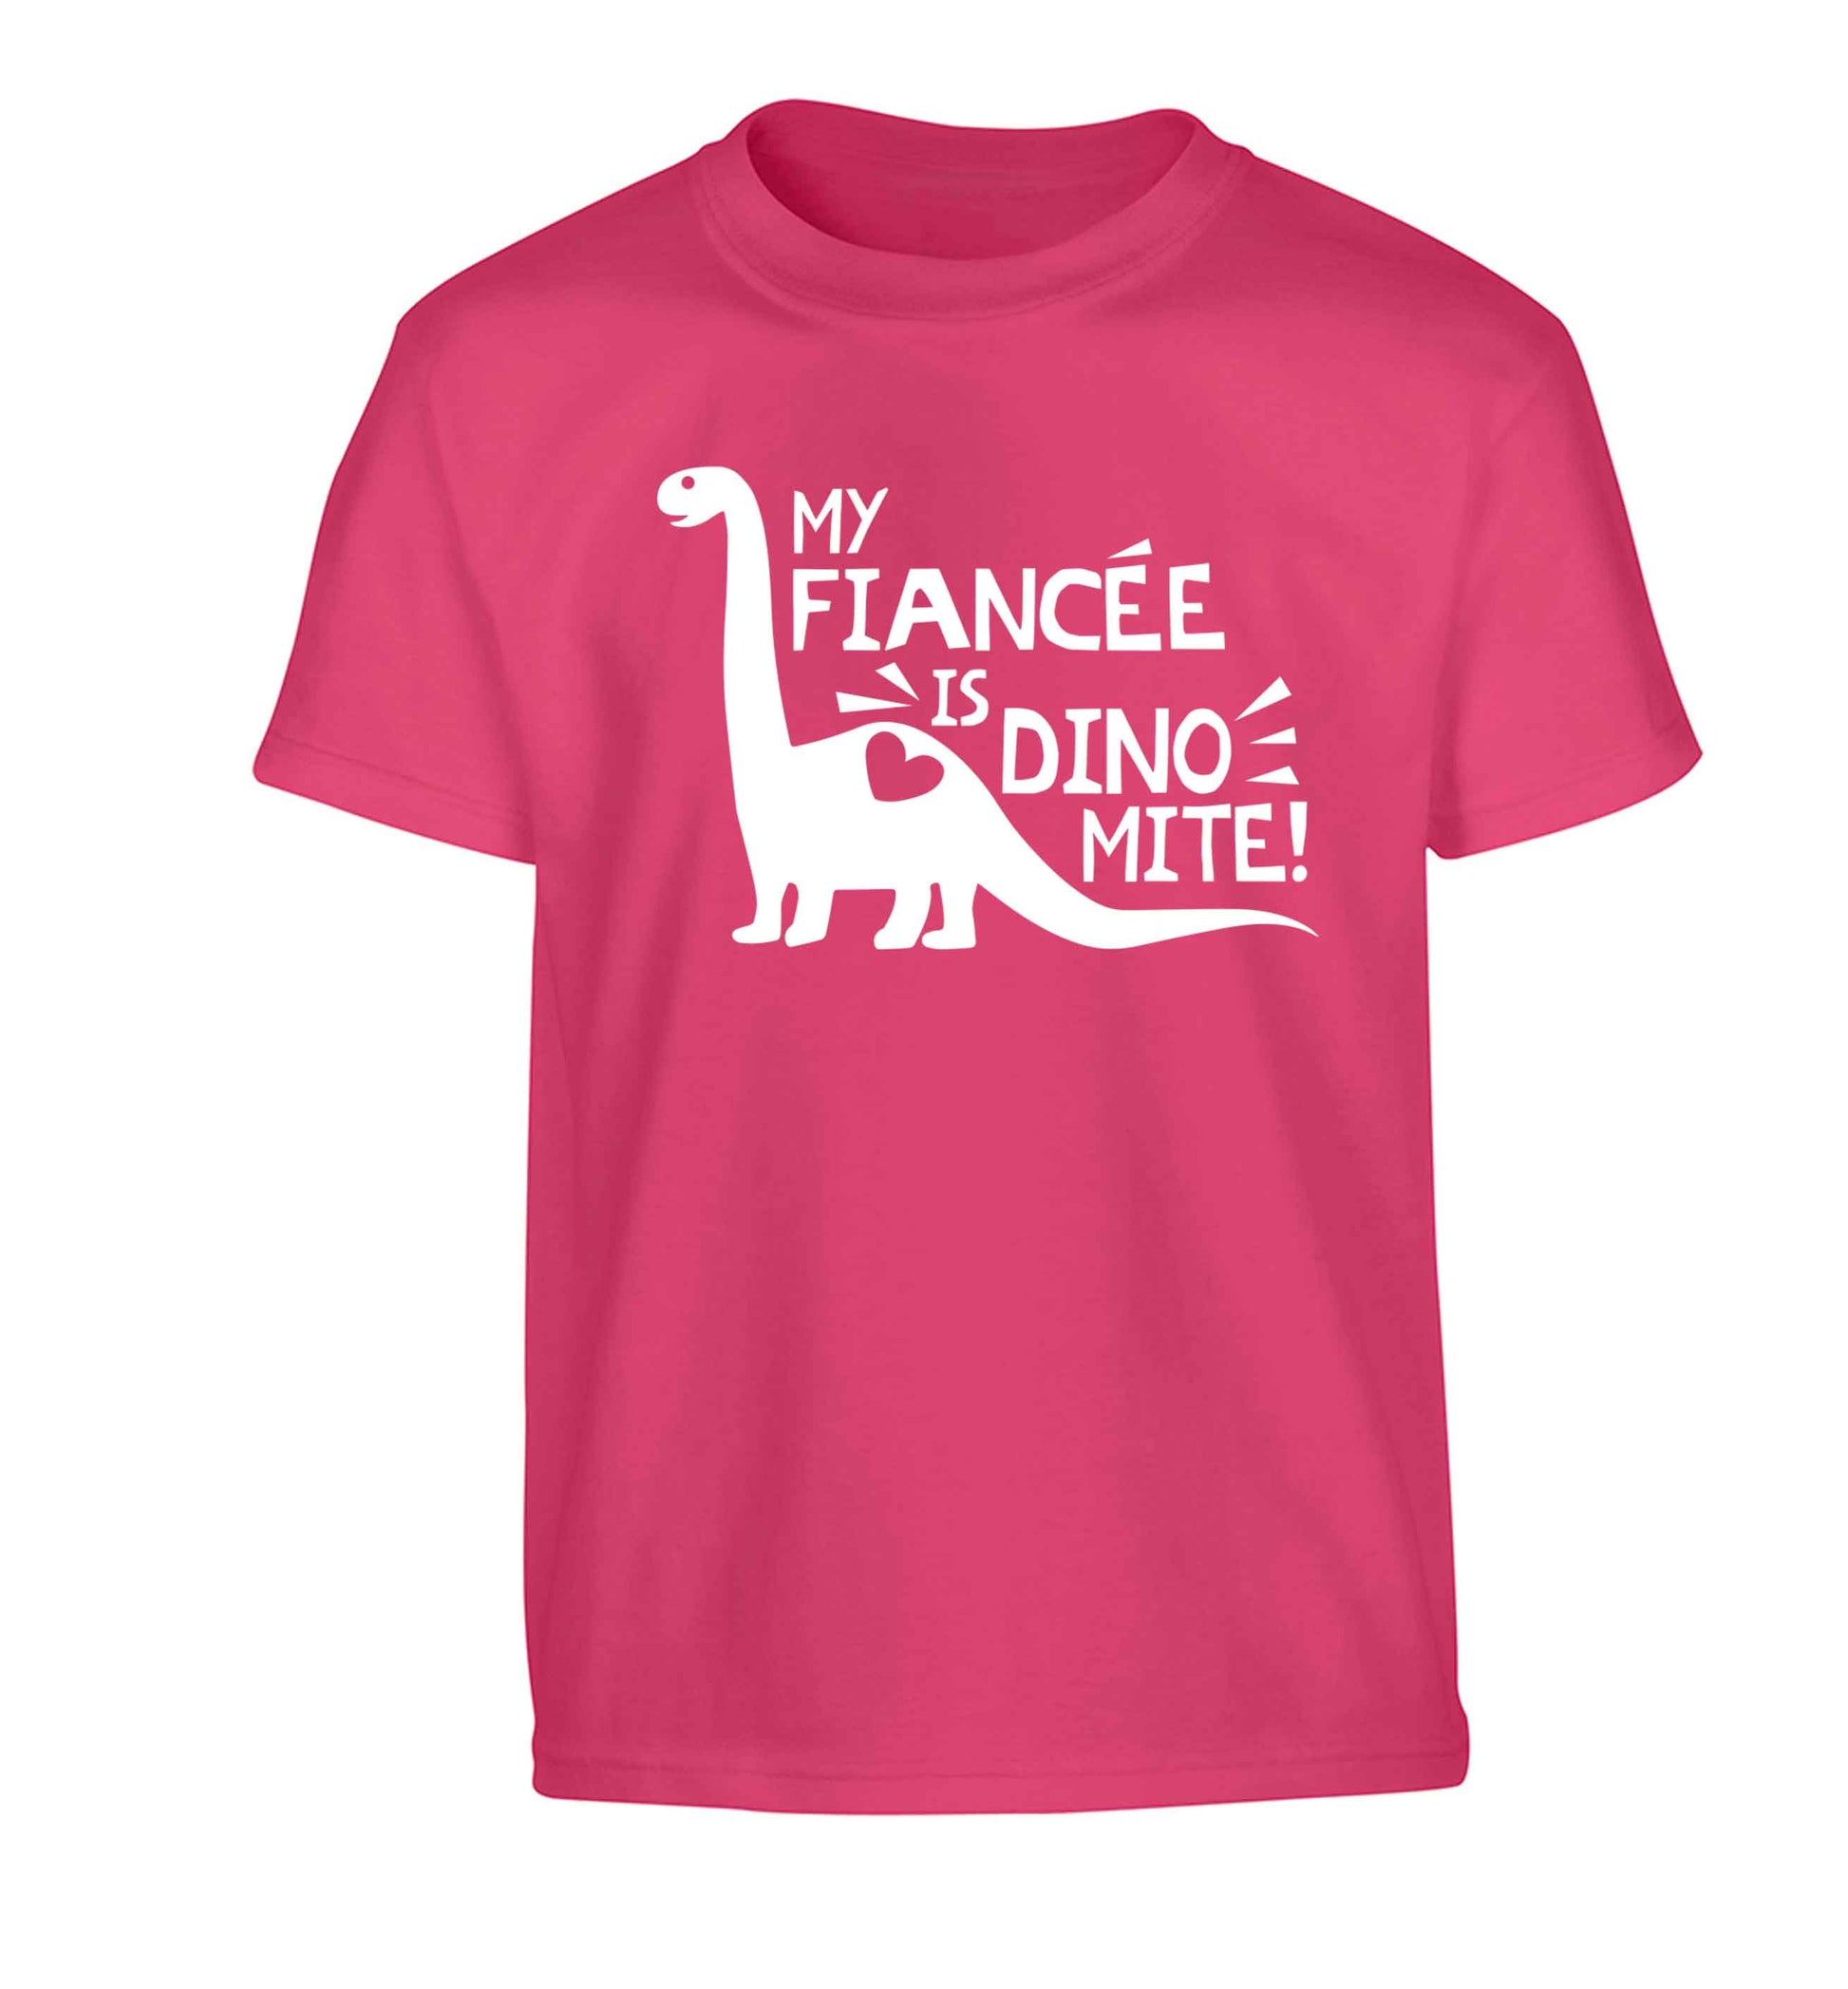 My fiancee is dinomite! Children's pink Tshirt 12-13 Years